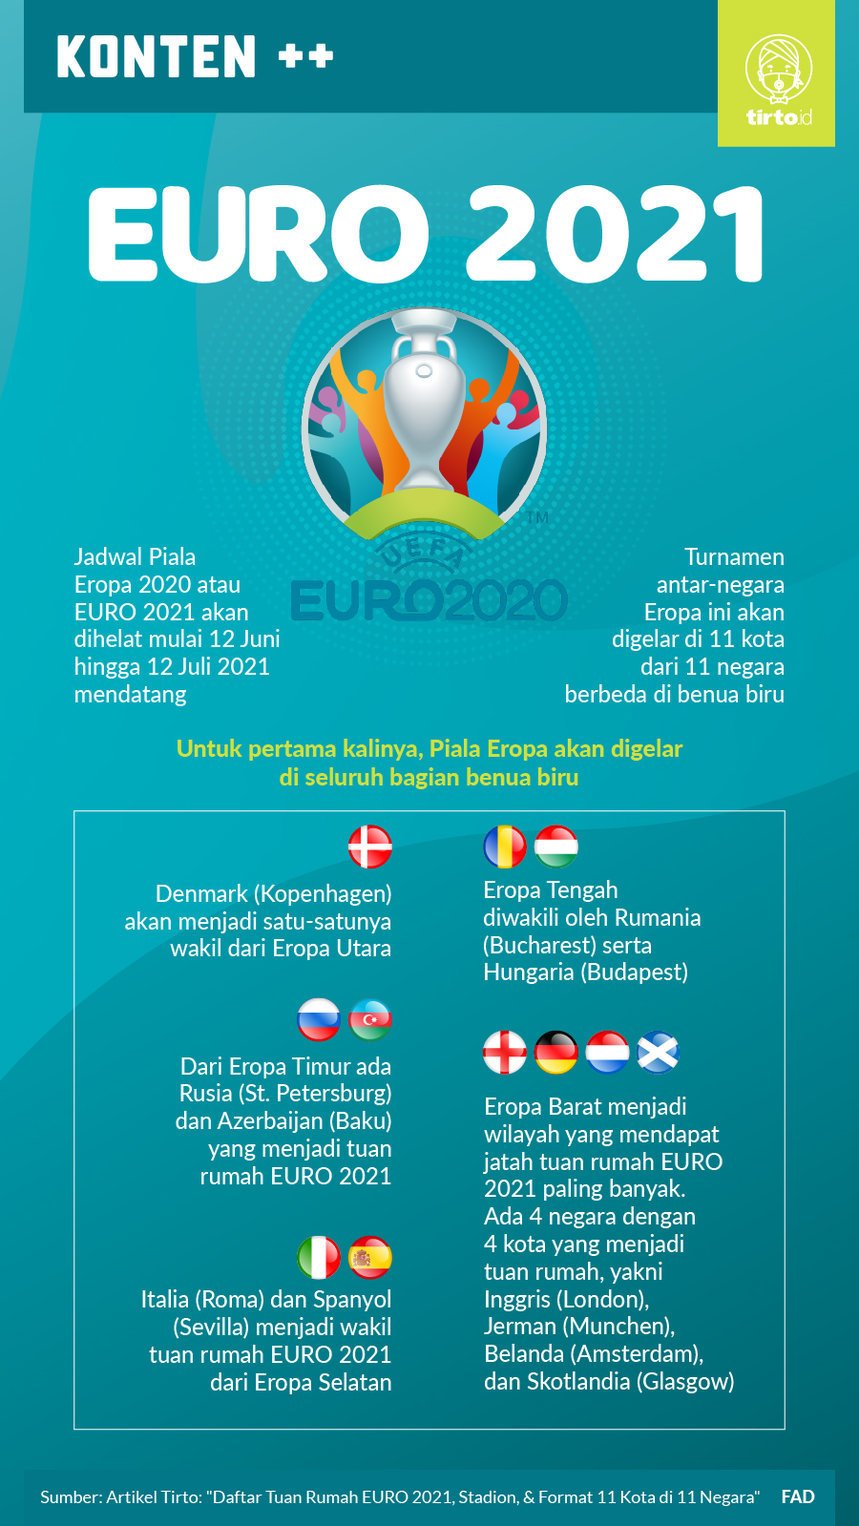 Jadwal pertandingan euro 2021